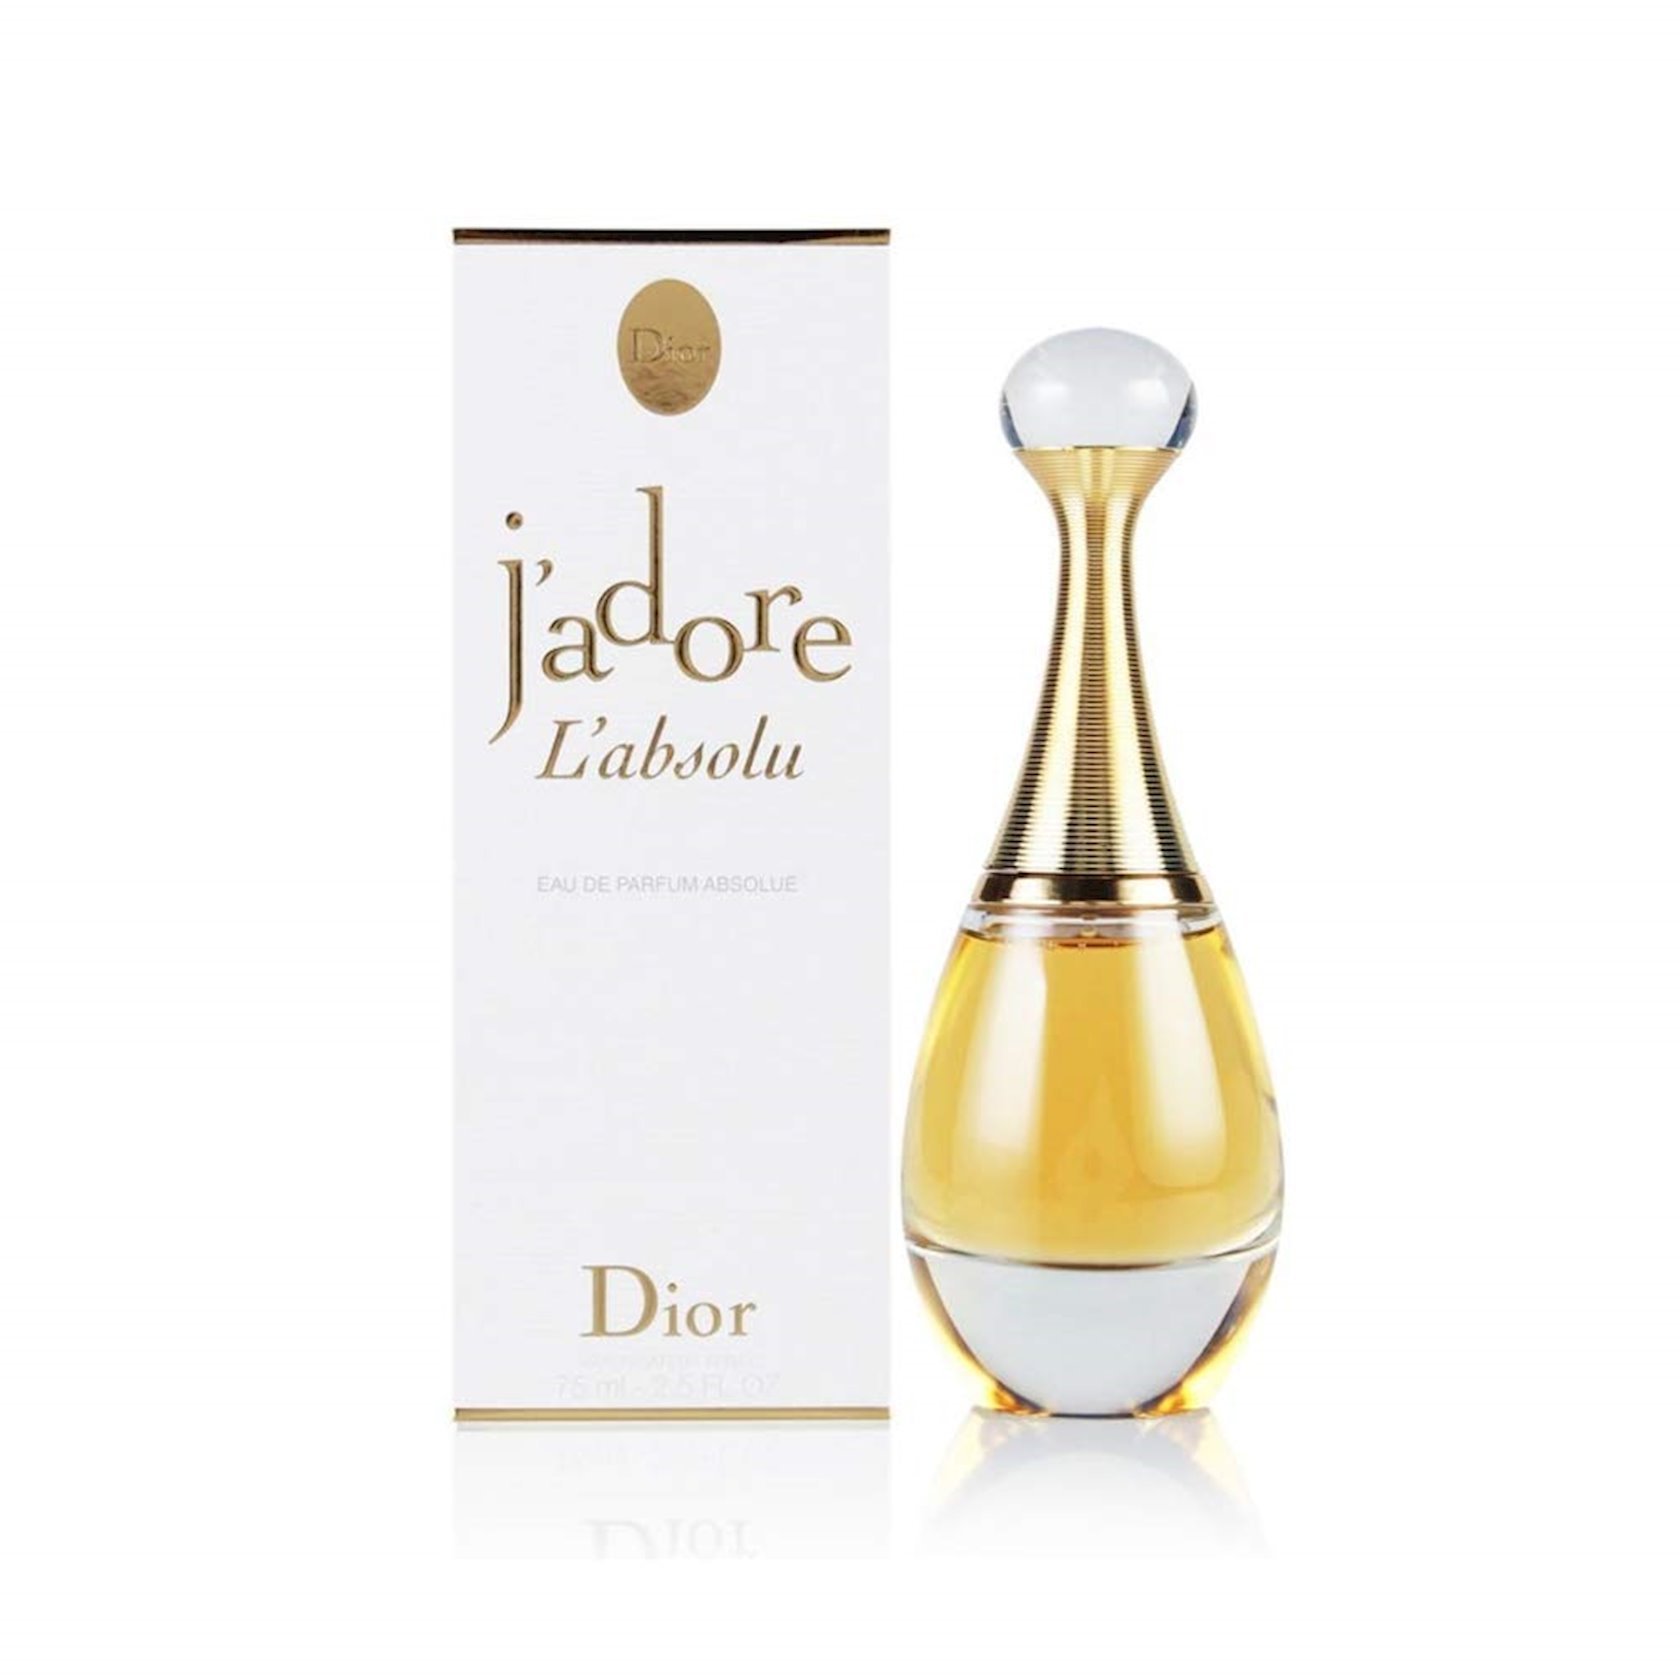 Аромат Christian Dior Jadore купить в интернетмагазине Dior описание  цена